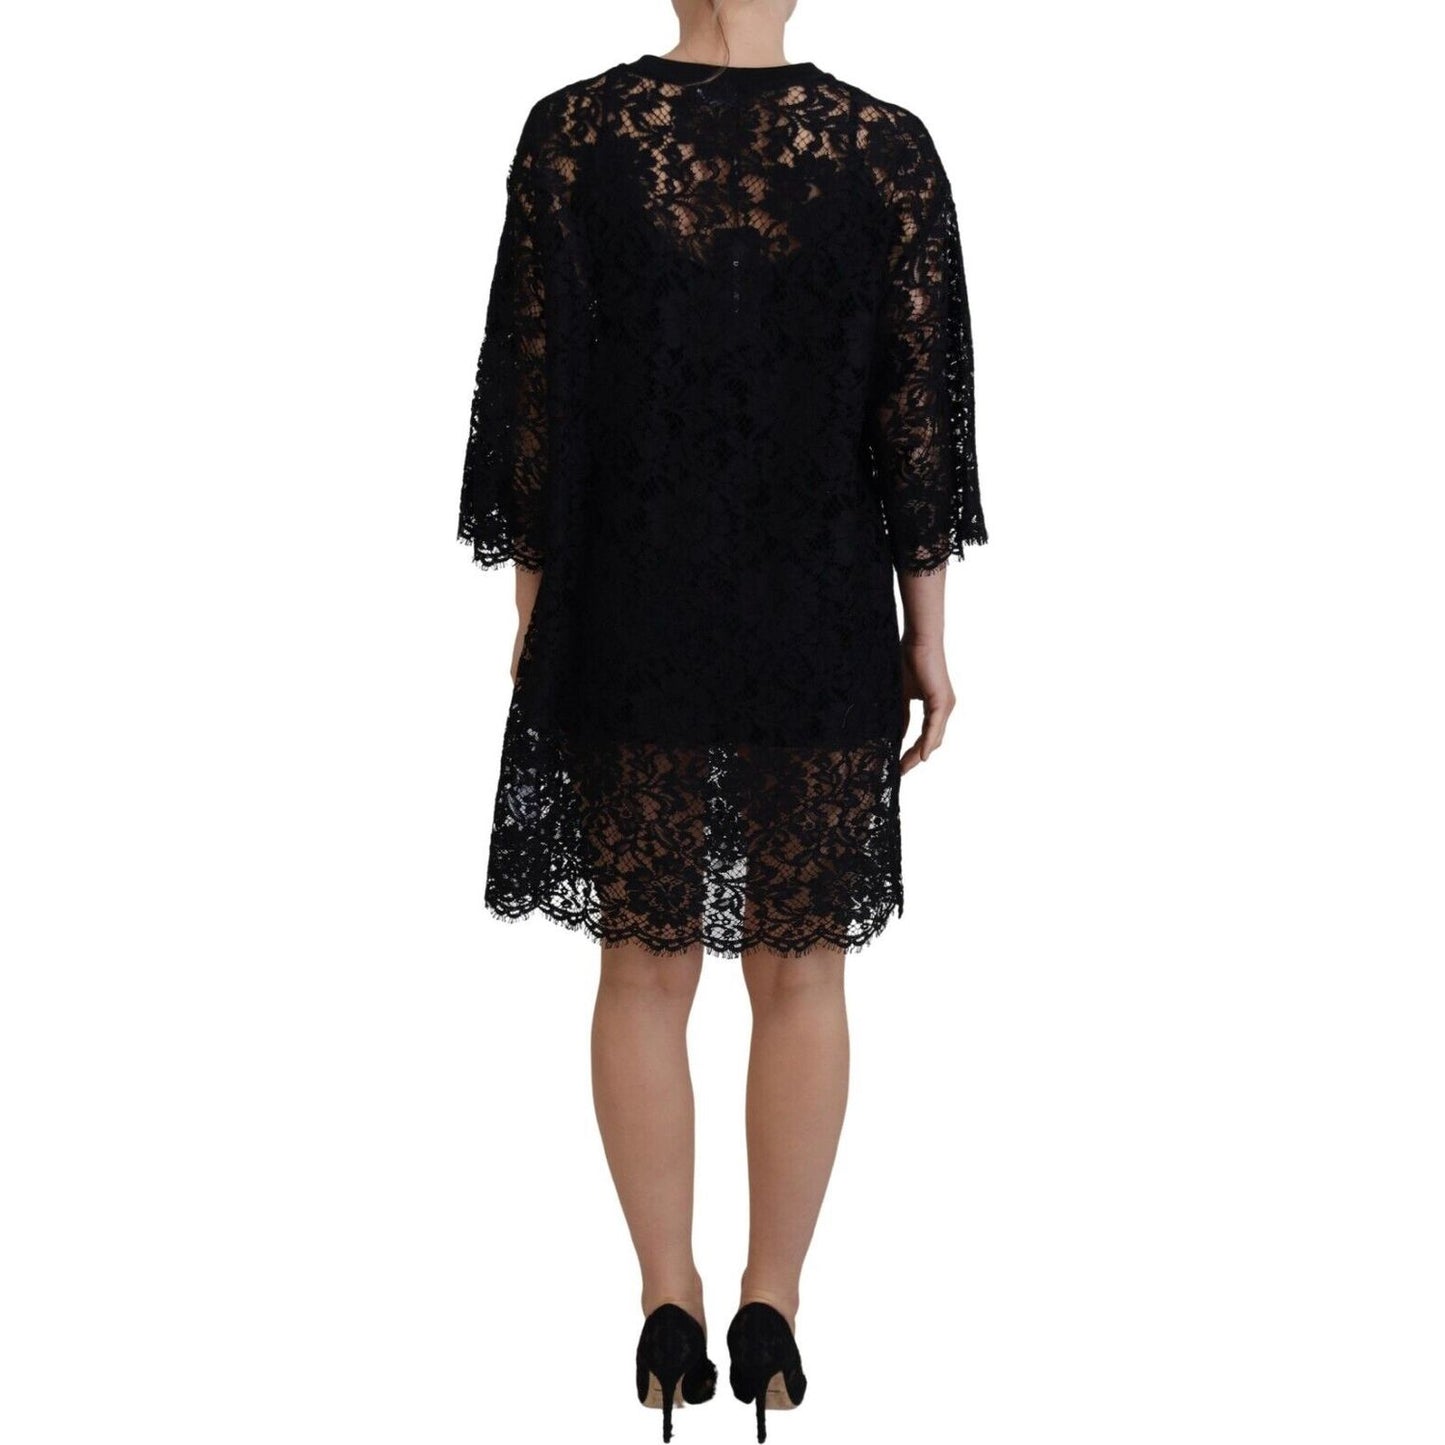 Dolce & Gabbana Elegant Black Floral Lace Shift Dress black-floral-lace-cotton-shift-mini-dress